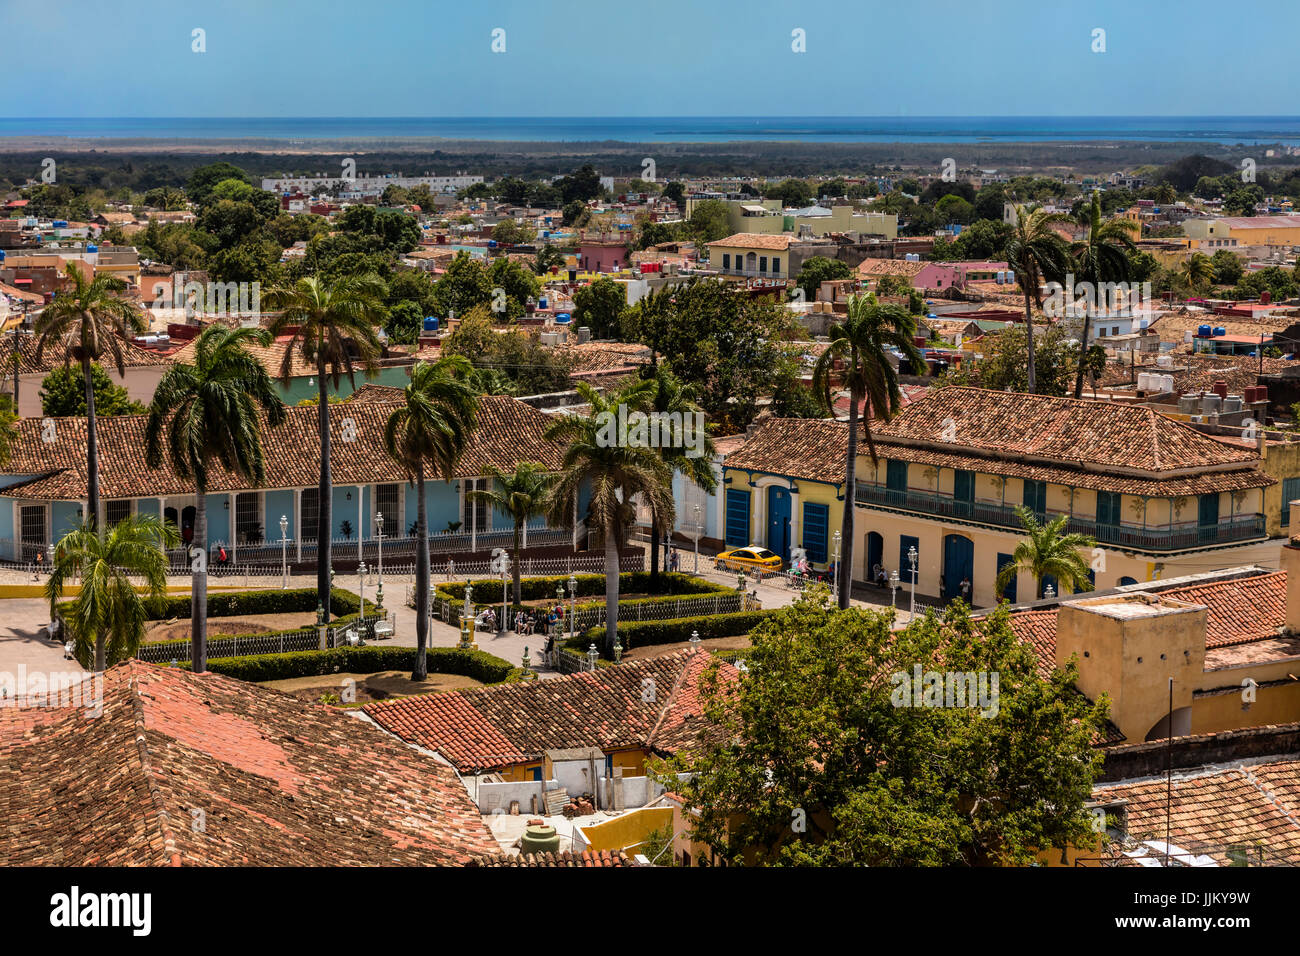 La Plaza Mayor se encuentra rodeada de edificios históricos en el corazón de la ciudad, Trinidad, Cuba Foto de stock